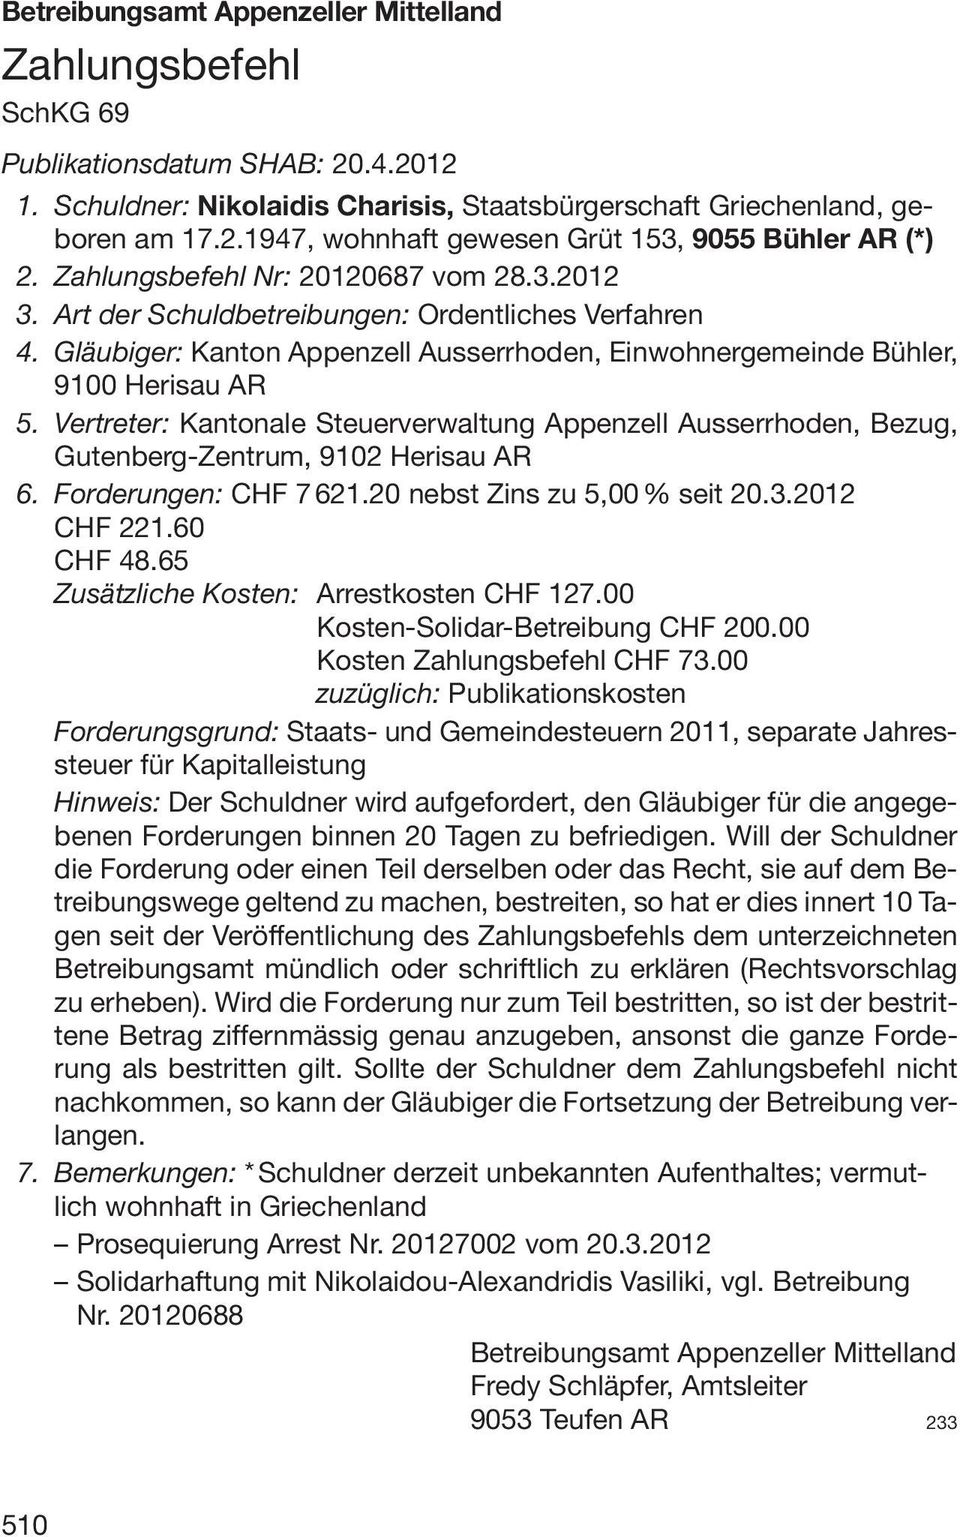 Vertreter: Kantonale Steuerverwaltung Appenzell Ausserrhoden, Bezug, Gutenberg-Zentrum, 9102 Herisau AR 6. Forderungen: CHF 7621.20 nebst Zins zu 5,00 % seit 20.3.2012 CHF 221.60 CHF 48.